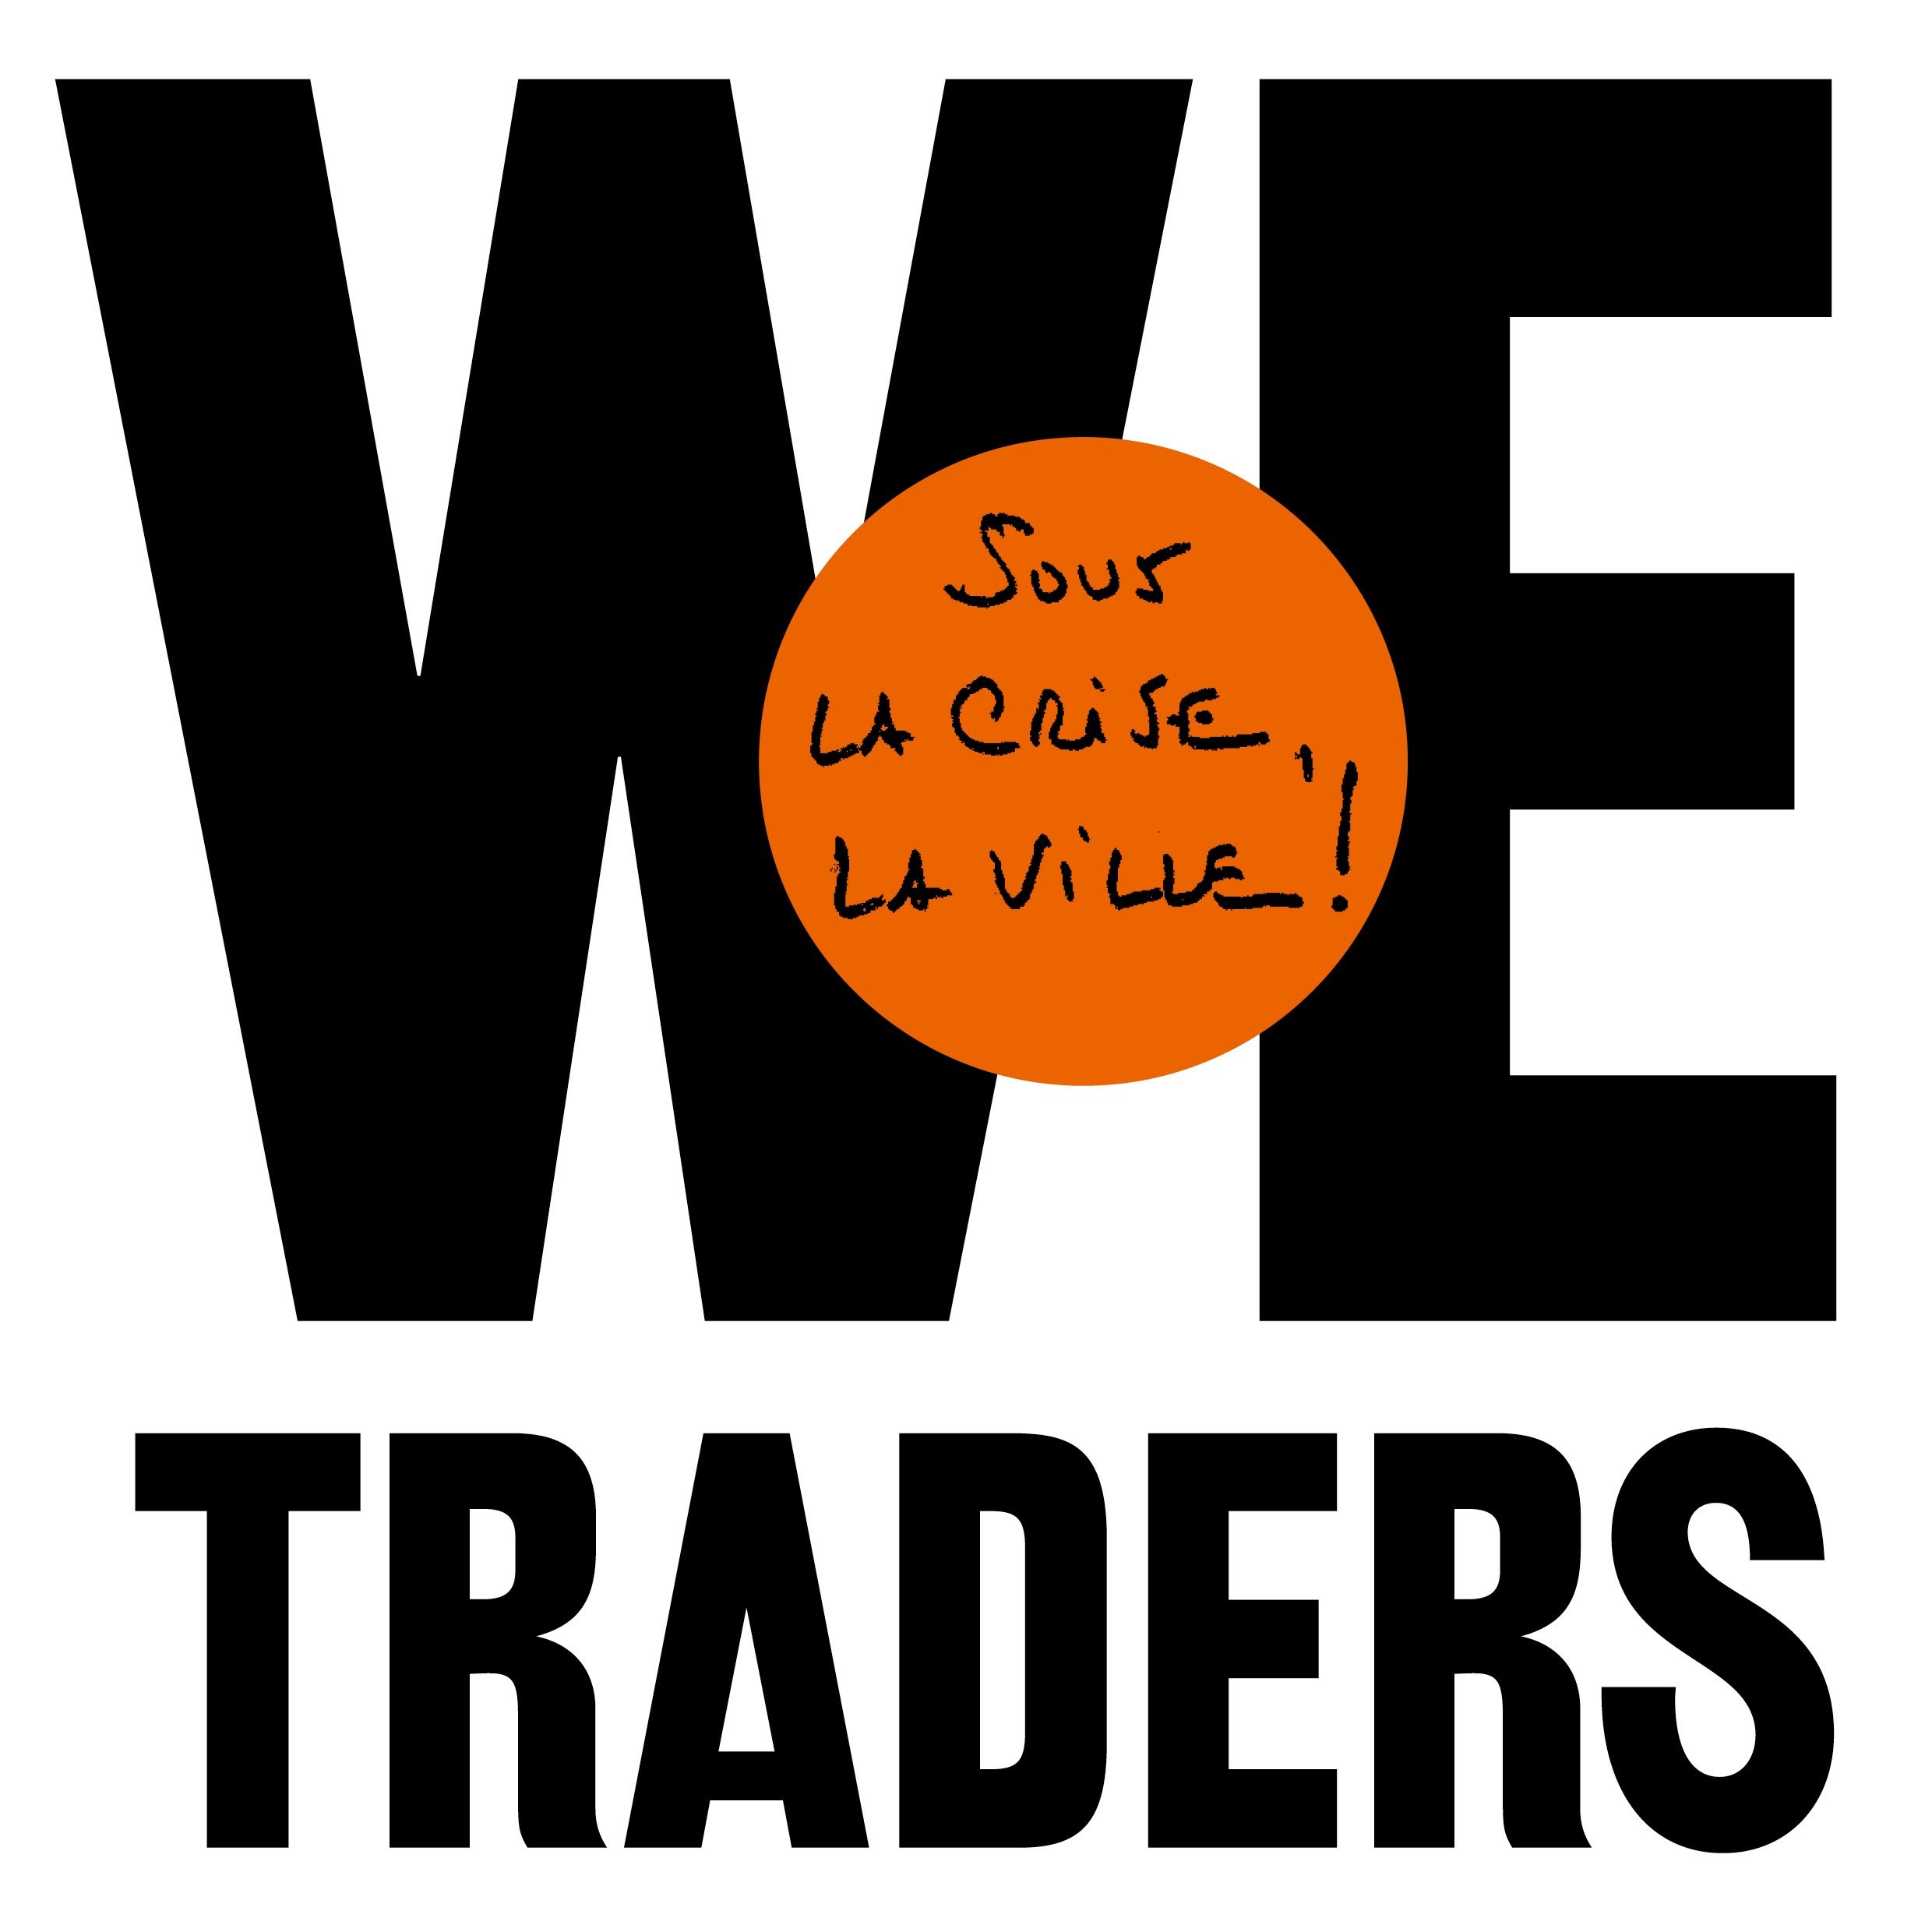 TOULOUSE | Exposition : We-Traders / Sous la crise, la ville !